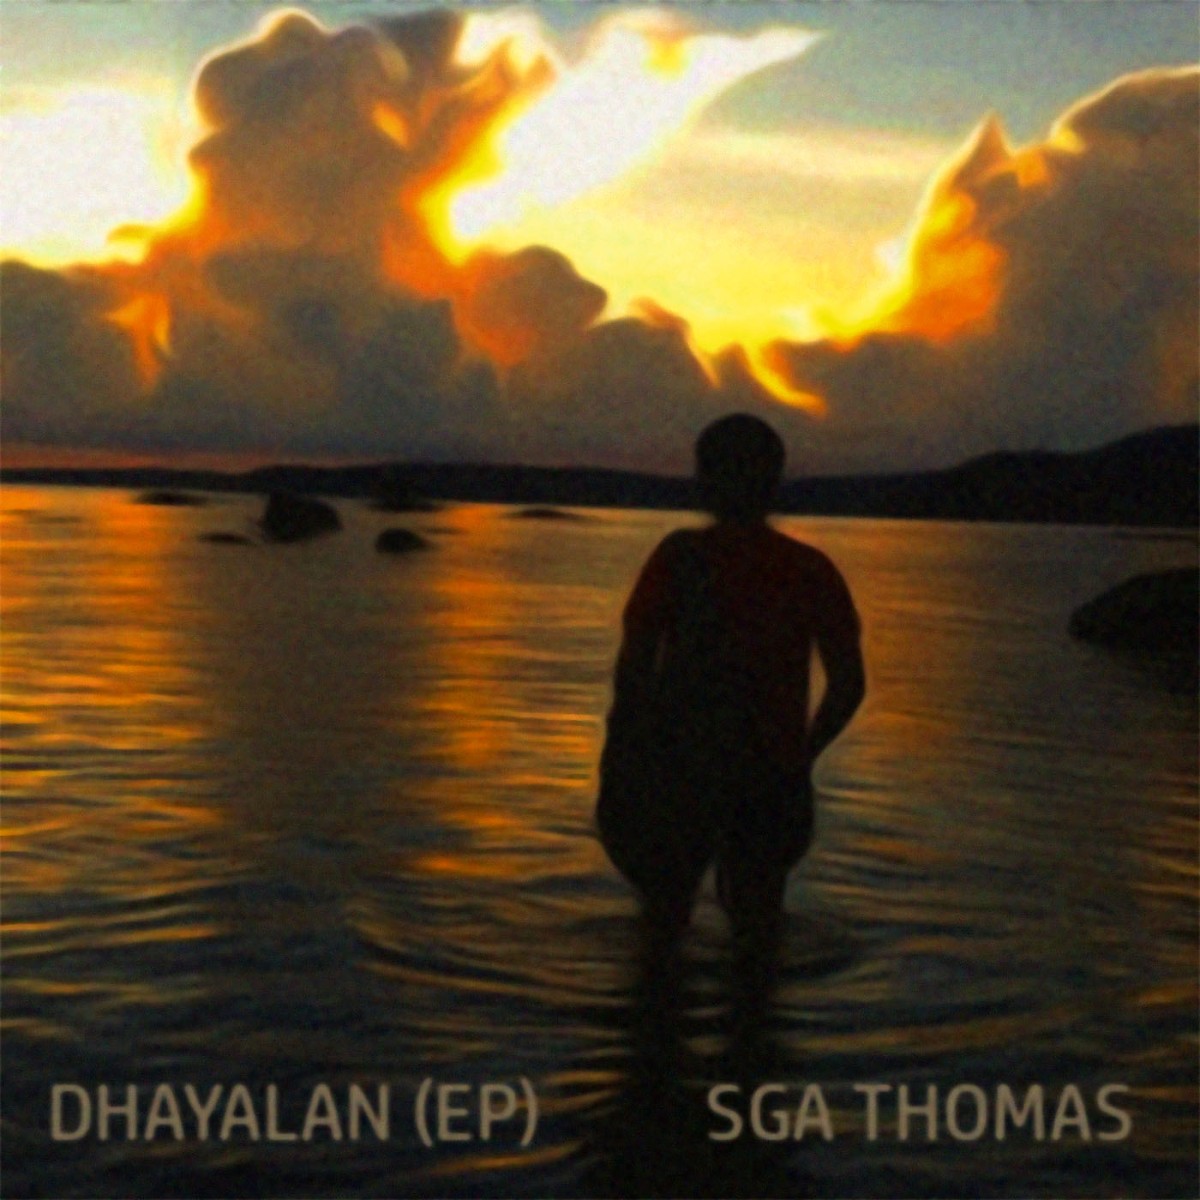 DHAYALAN (EP)